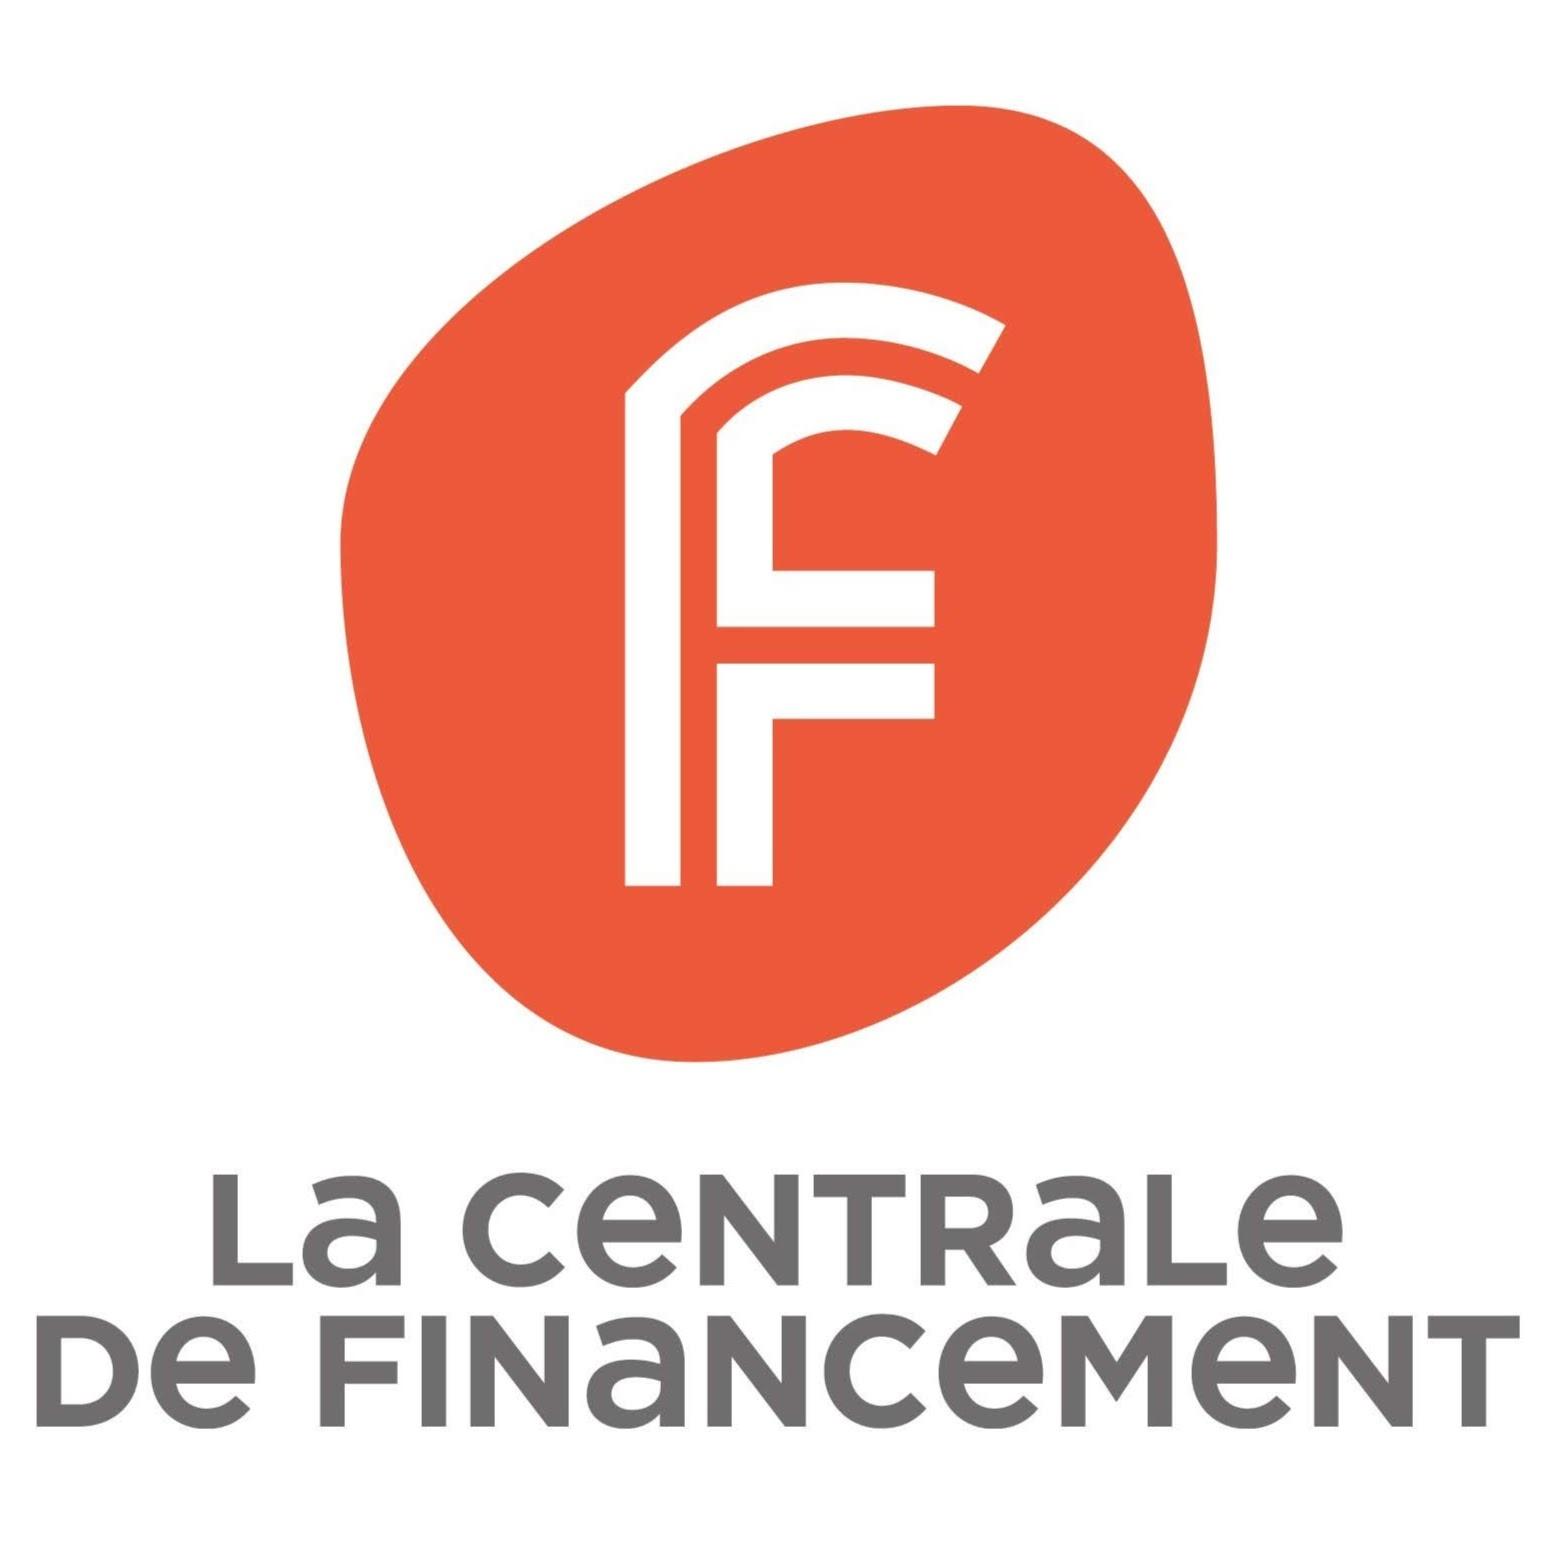 La Centrale De Financement Paris